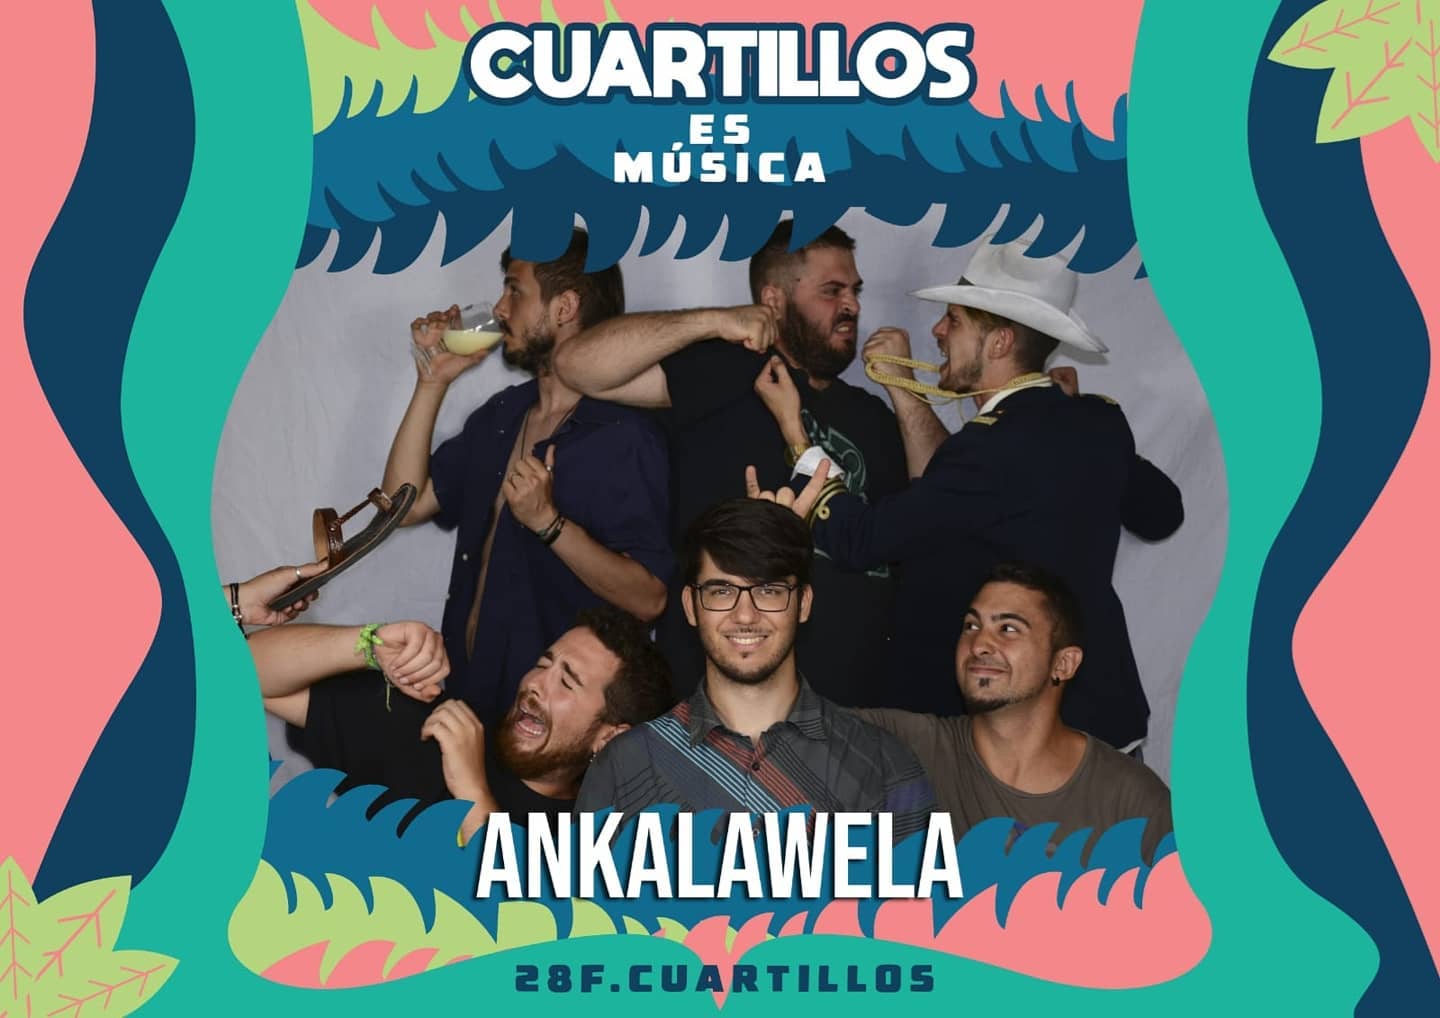 Ankalawela, en el cartel promocional de 'Cuartillos es música'.